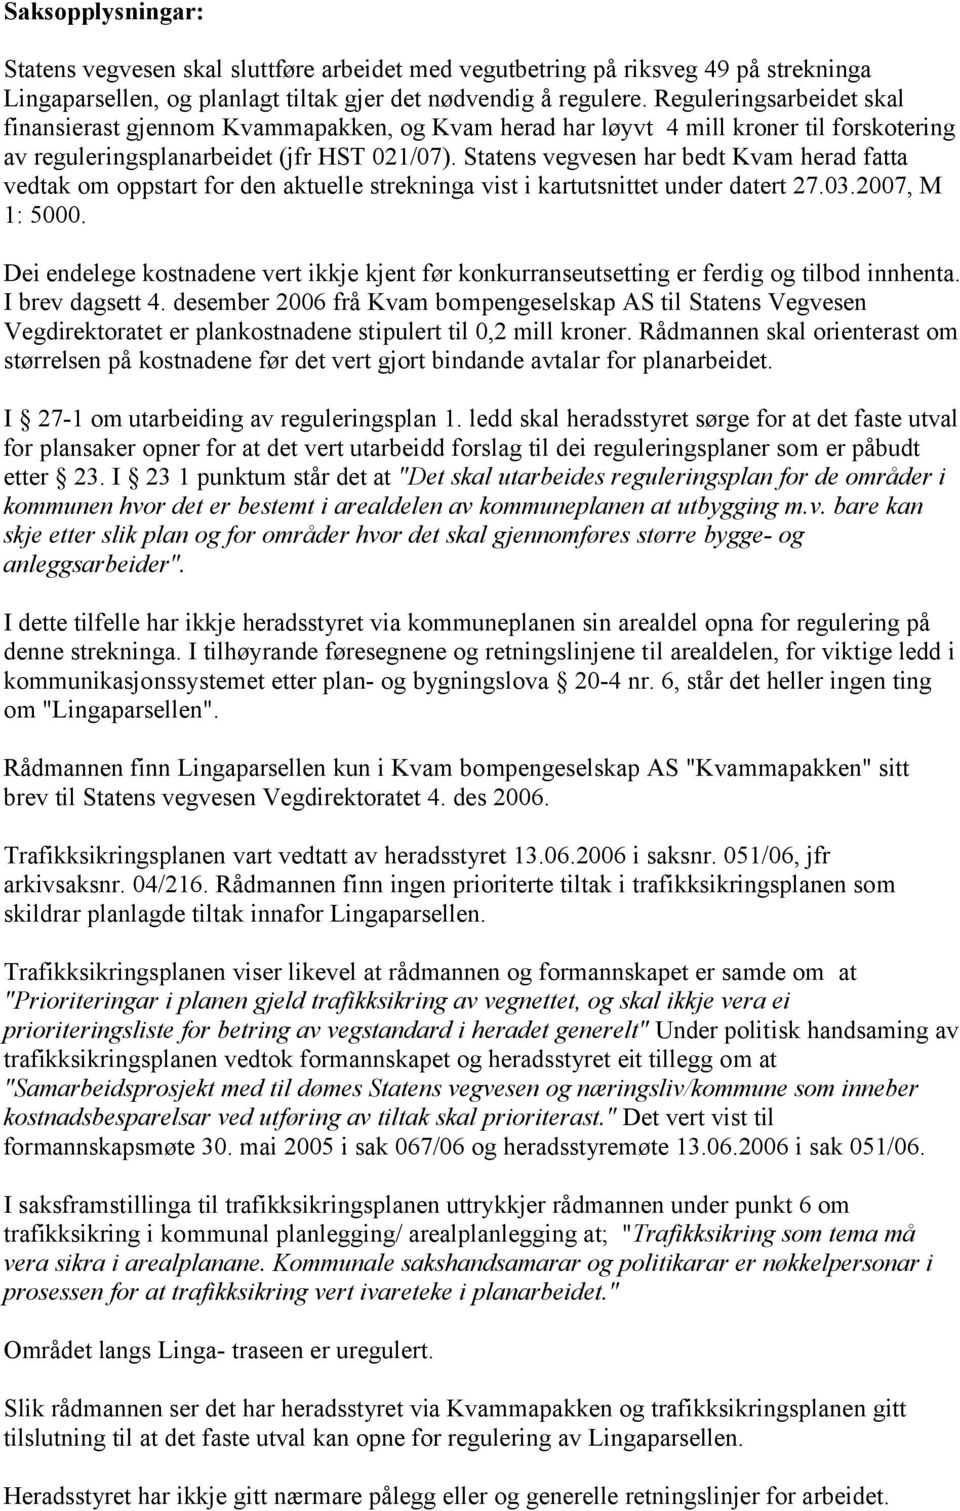 Statens vegvesen har bedt Kvam herad fatta vedtak om oppstart for den aktuelle strekninga vist i kartutsnittet under datert 27.03.2007, M 1: 5000.